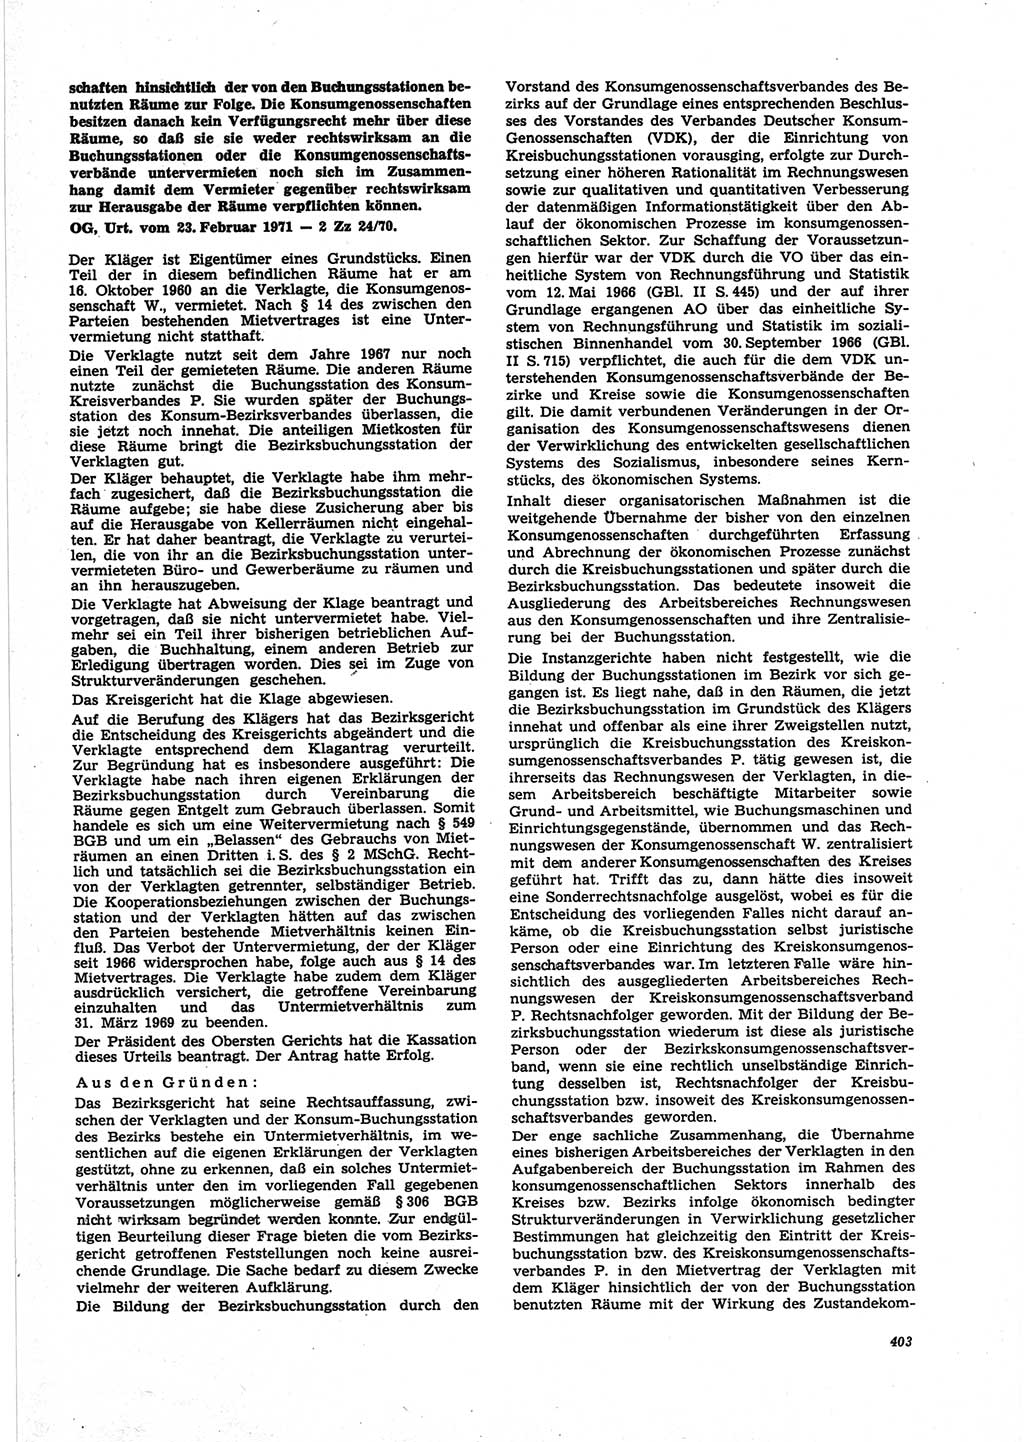 Neue Justiz (NJ), Zeitschrift für Recht und Rechtswissenschaft [Deutsche Demokratische Republik (DDR)], 25. Jahrgang 1971, Seite 403 (NJ DDR 1971, S. 403)